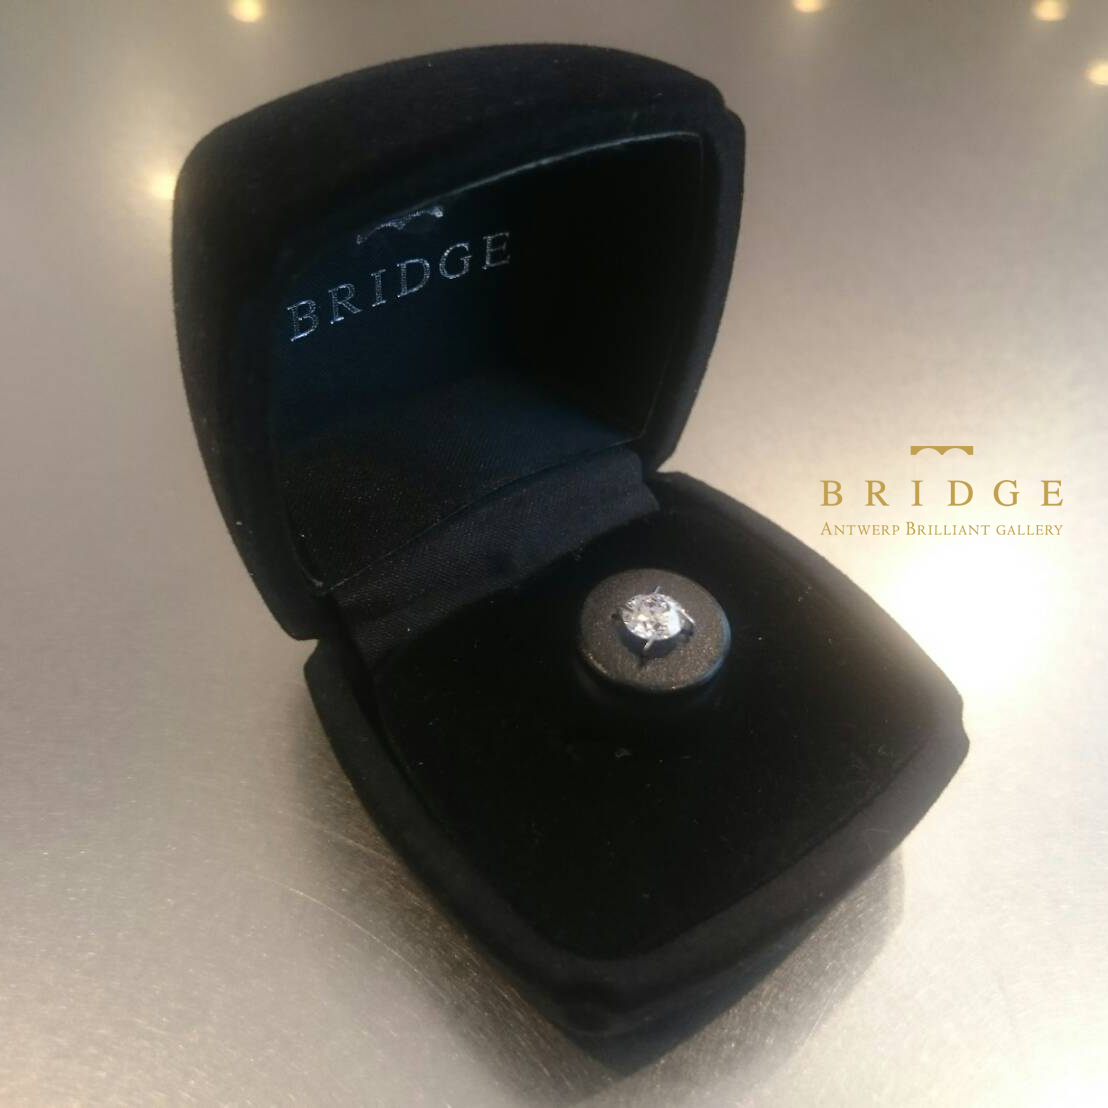 BRIDGE銀座はサプライズプロポーズを応援しています！ダイヤモンドが美しい婚約指輪